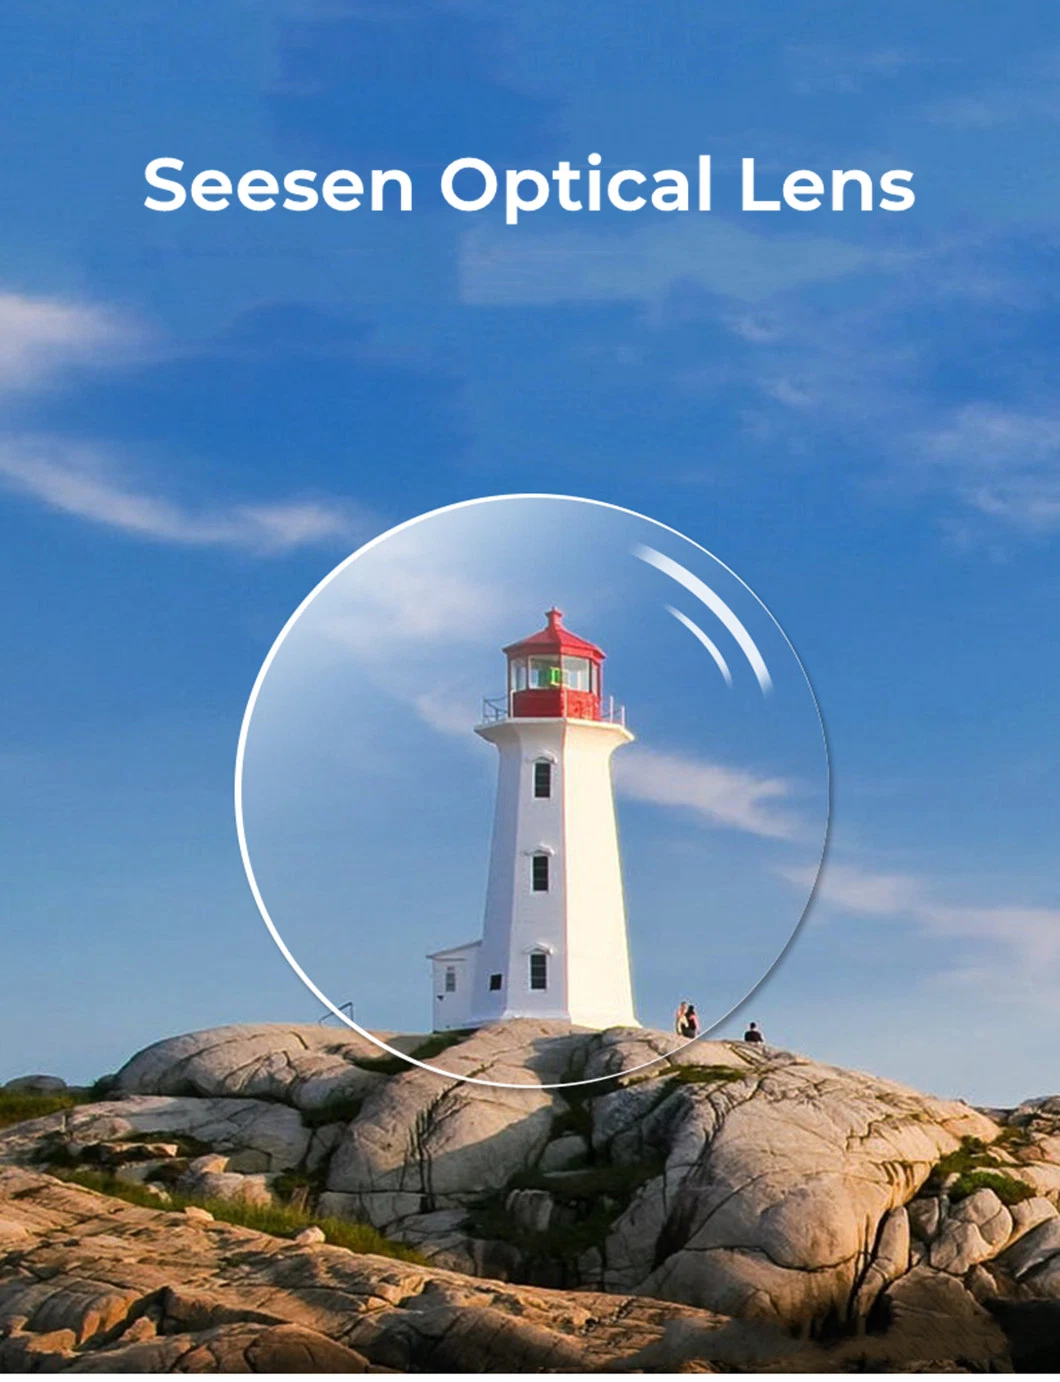 Spectacle Lenses Manufacturers 1.61 Aspheric UV400 Hmc High Index Prescription Lenses